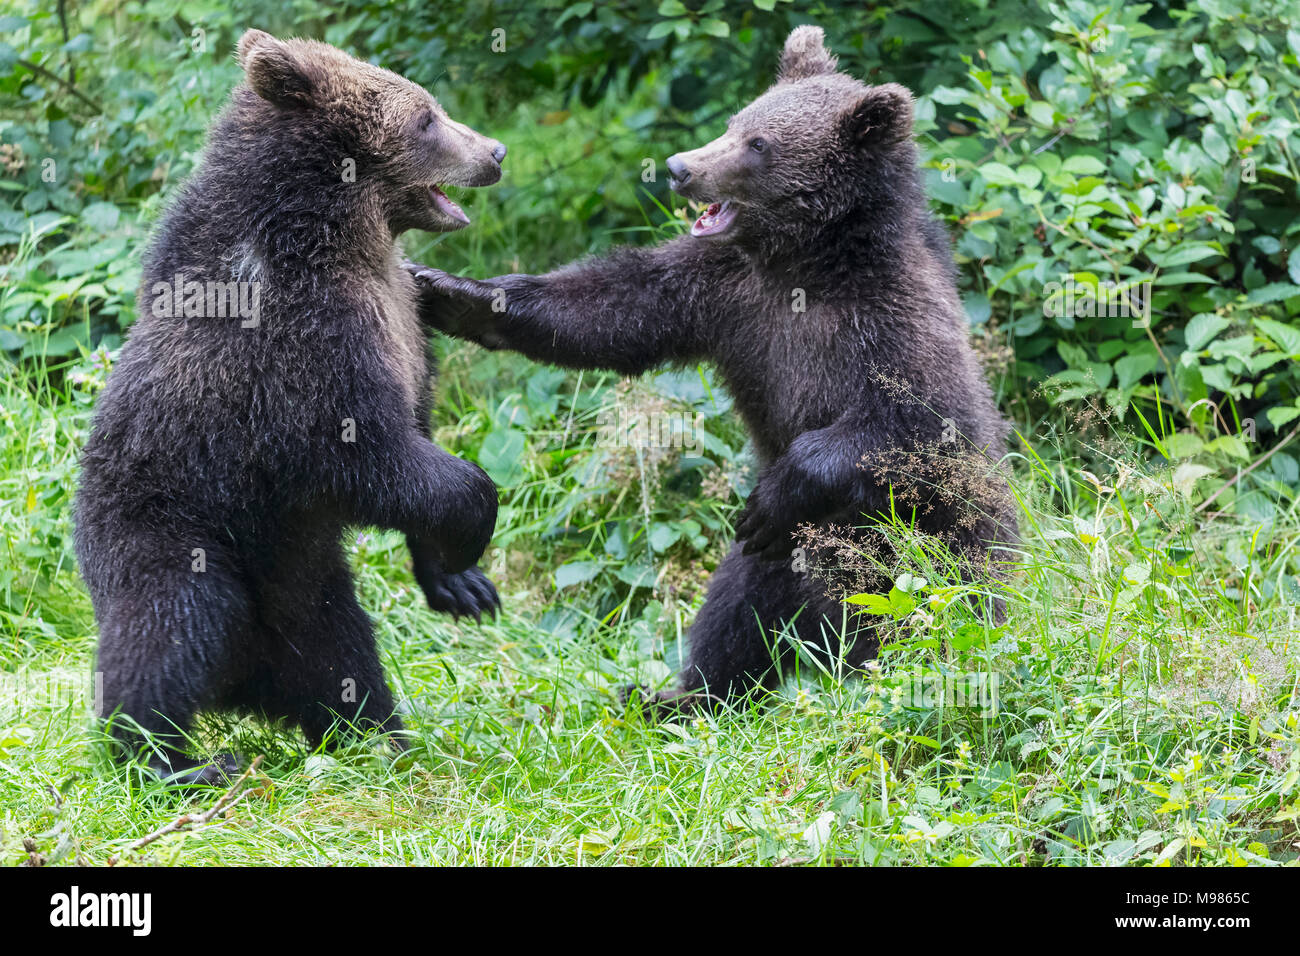 Alemania, el Parque Nacional del Bosque Bávaro, animal Neuschoenau sitio al aire libre, oso pardo, Ursus arctos, animales jóvenes jugando Foto de stock